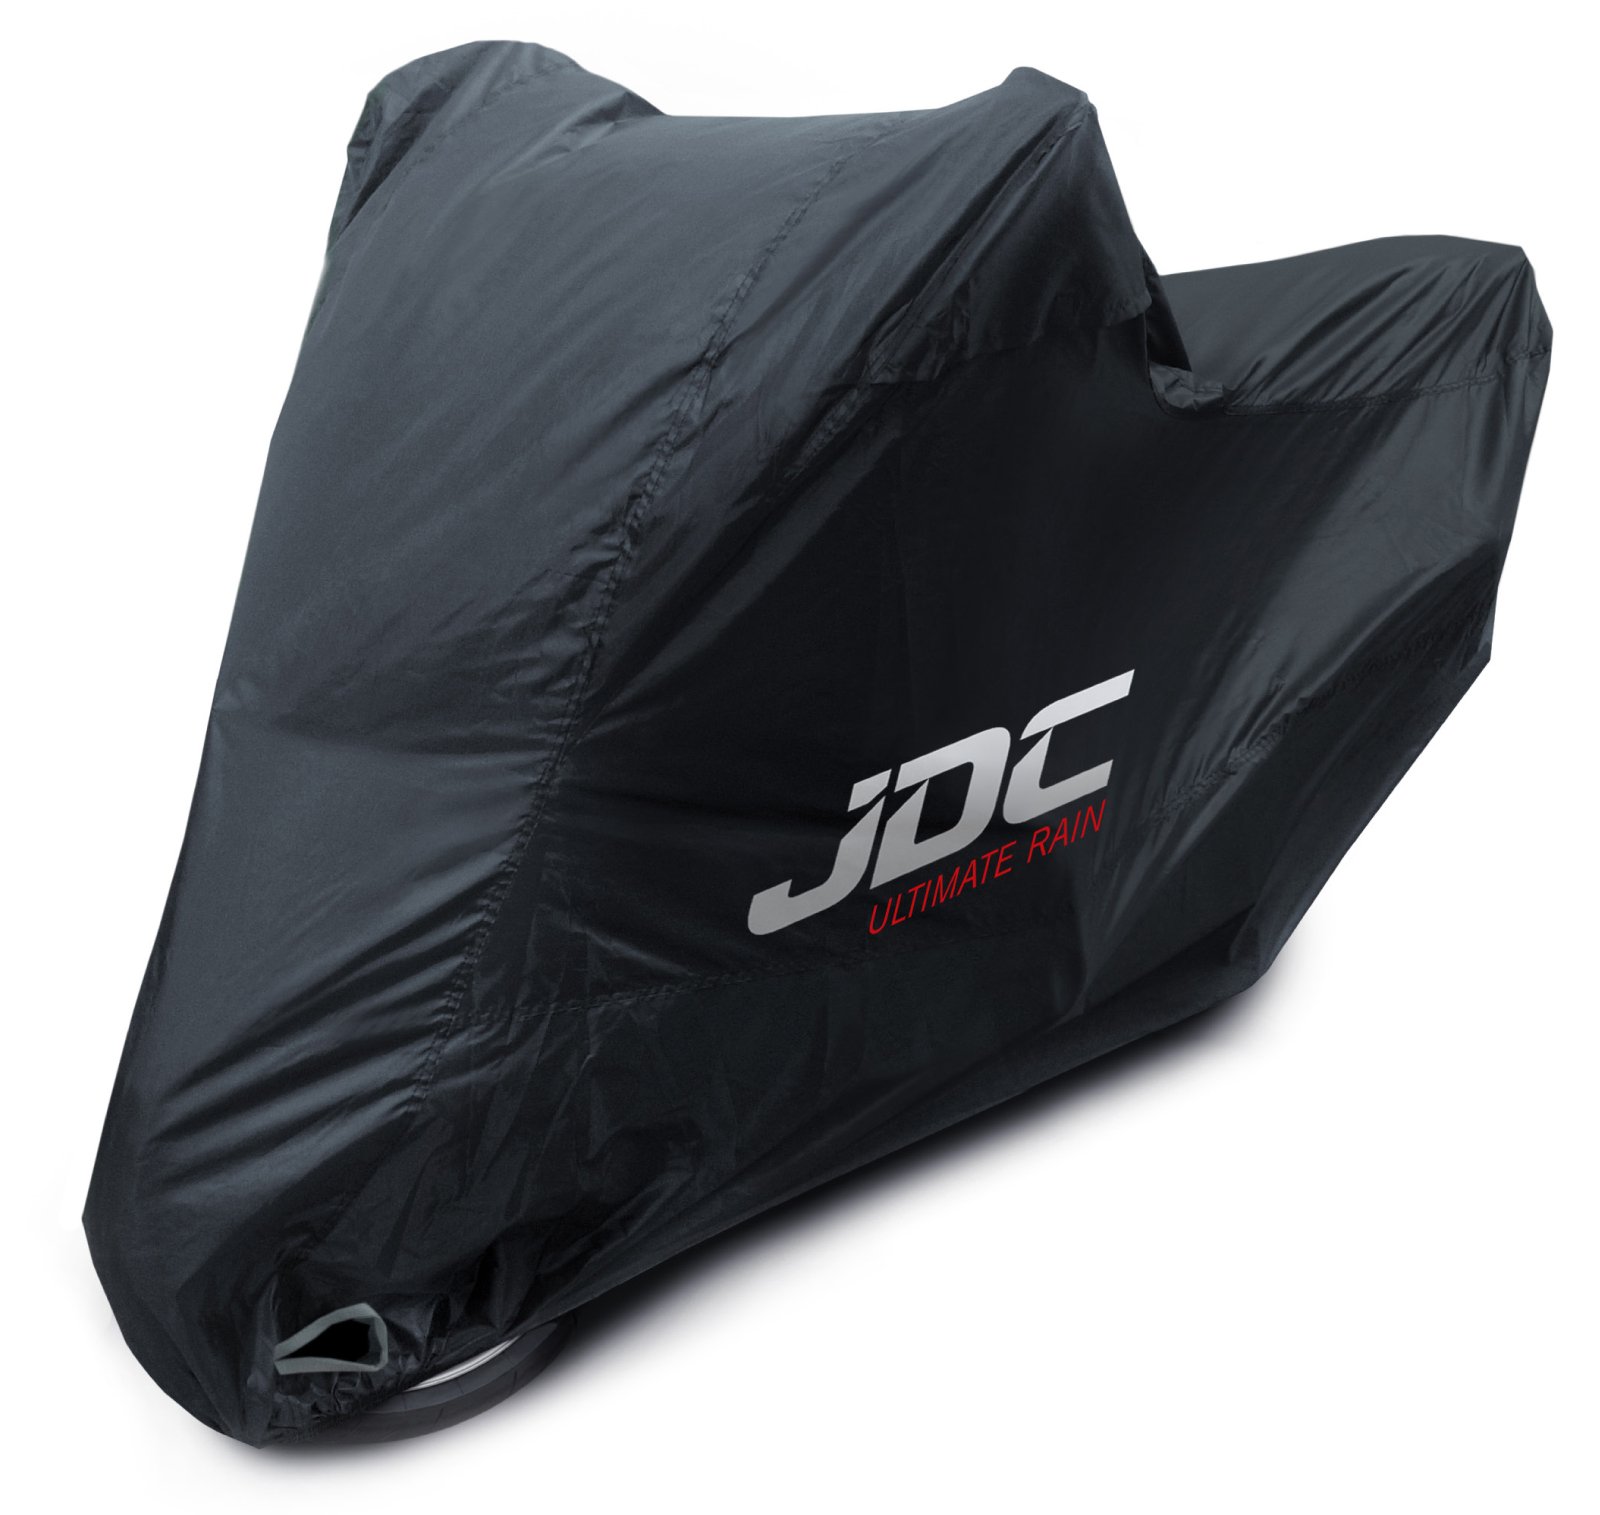 JDC 100% wasserdichte Motorradabdeckung – Ultimate RAIN (Strapazierfähig, weiches Futter, hitzebeständig, verschweißte Nähte) - XL Tall